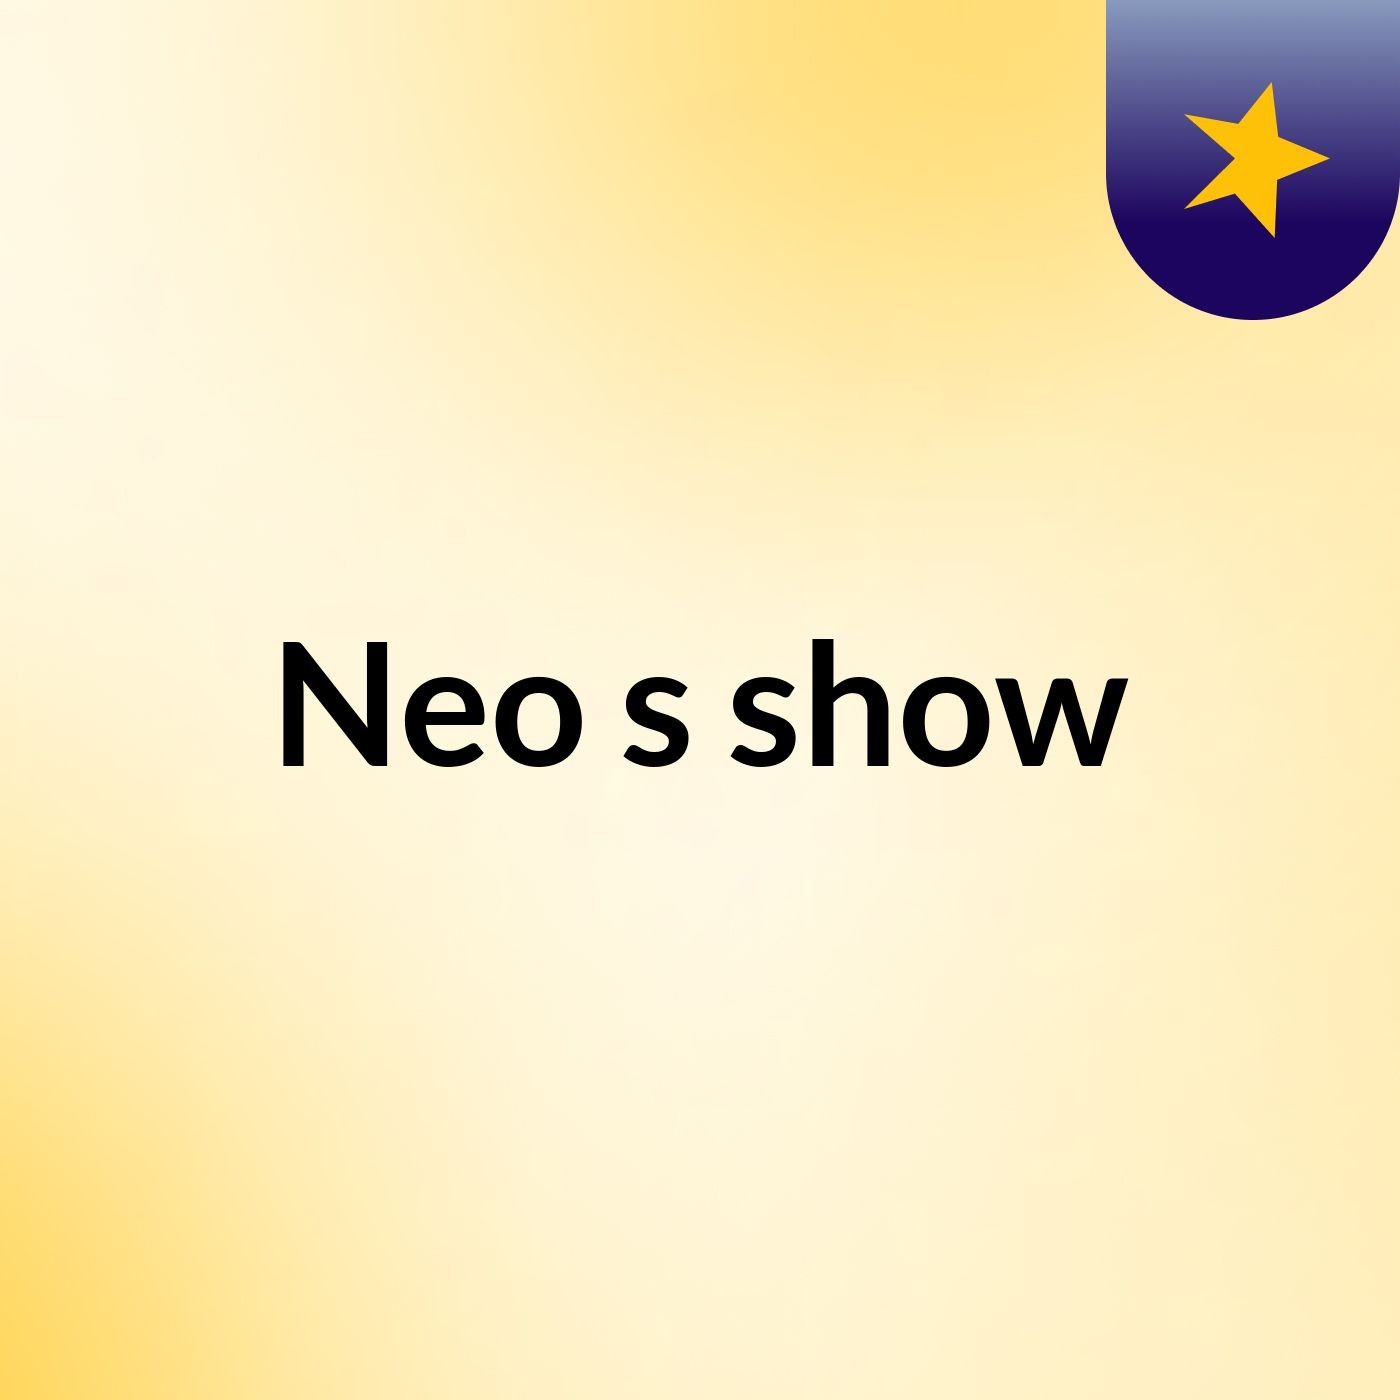 Neo's show